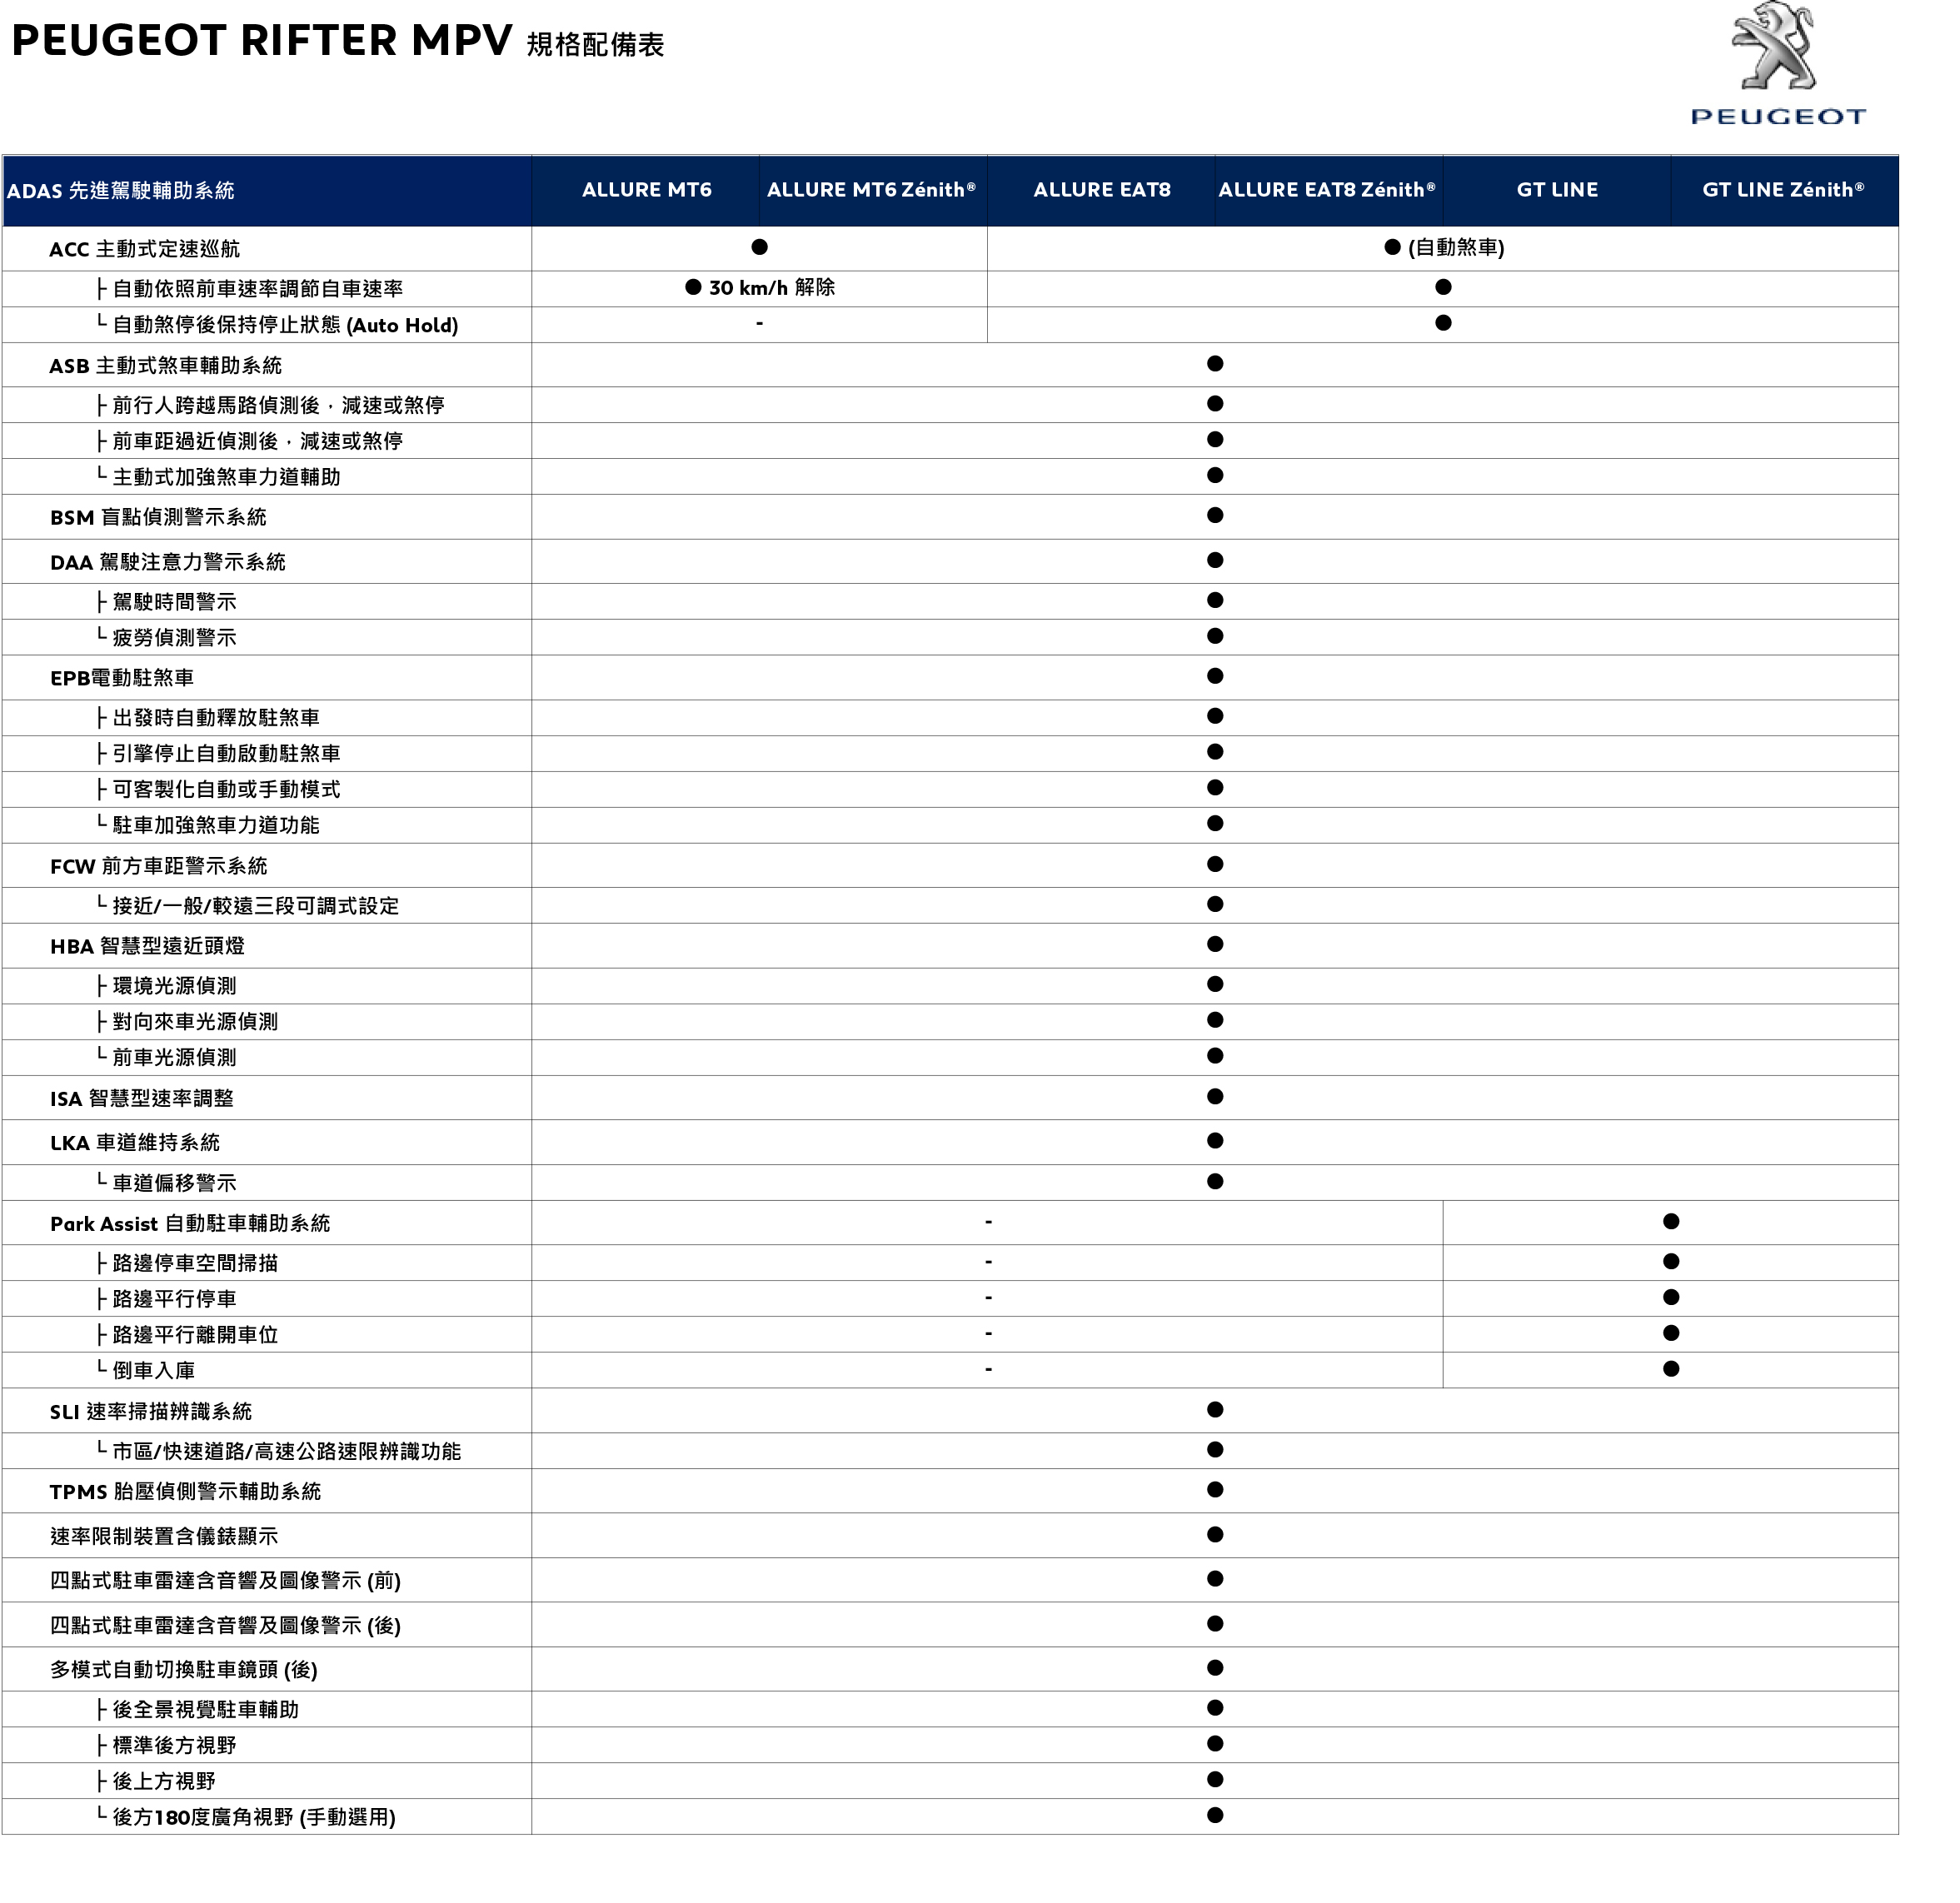 PEUGEOT RIFTER MPV 規格配備表_20191021-4